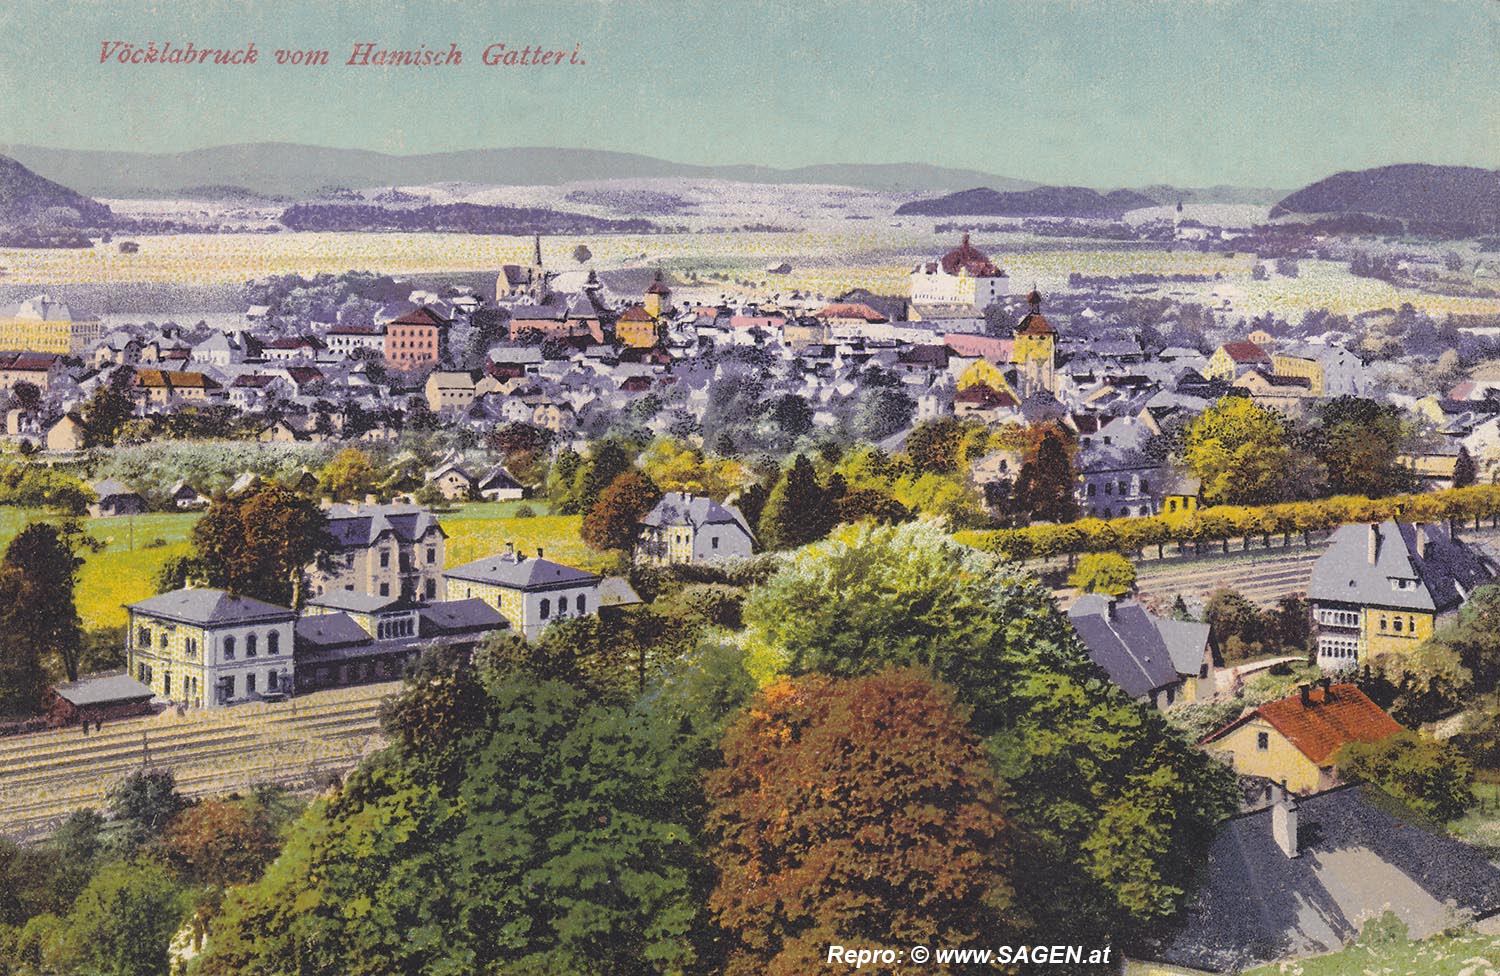 Vöcklabruck vom Hamisch-Gatterl 1915